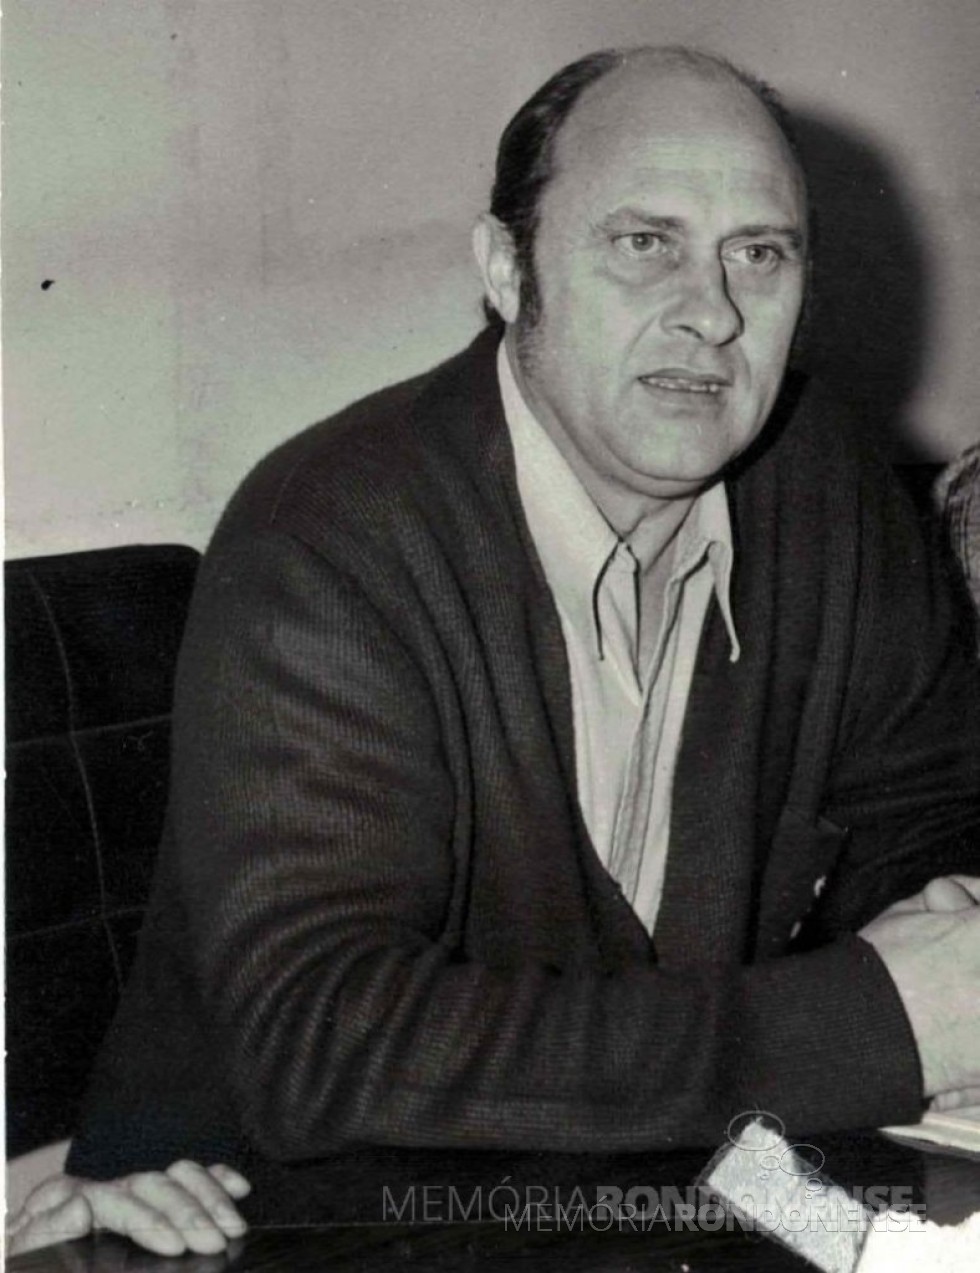 || Advogado Wilson Carlos Kuhn eleito prefeito do município de Toledo, em novembro de 1972.
Imagem: Acervo Museu Histórico Willy Barth - FOTO 13 - 